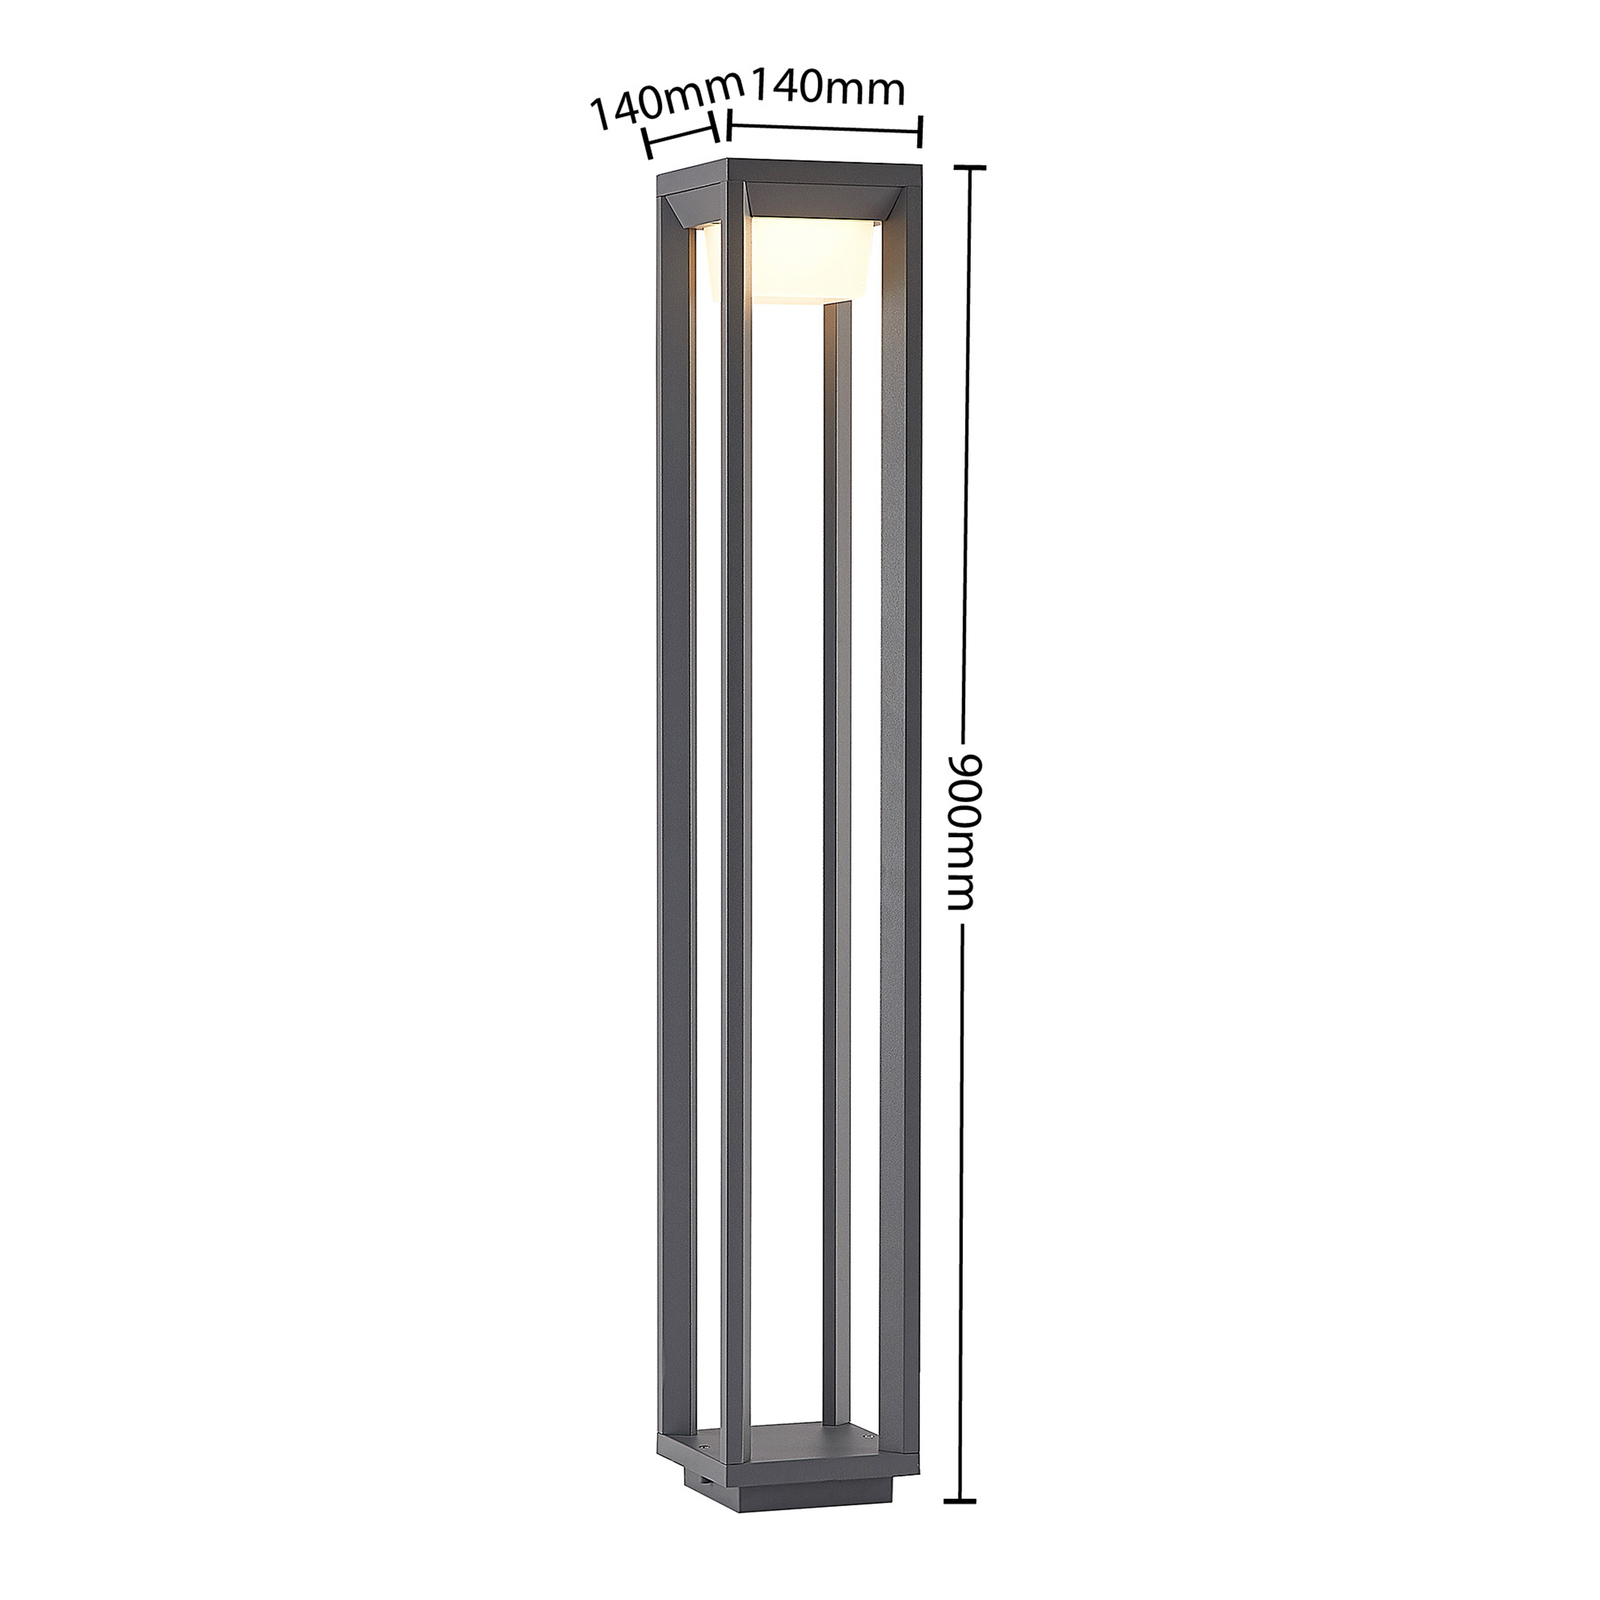 Prios Gamion LED-veilampe av aluminium, 90 cm